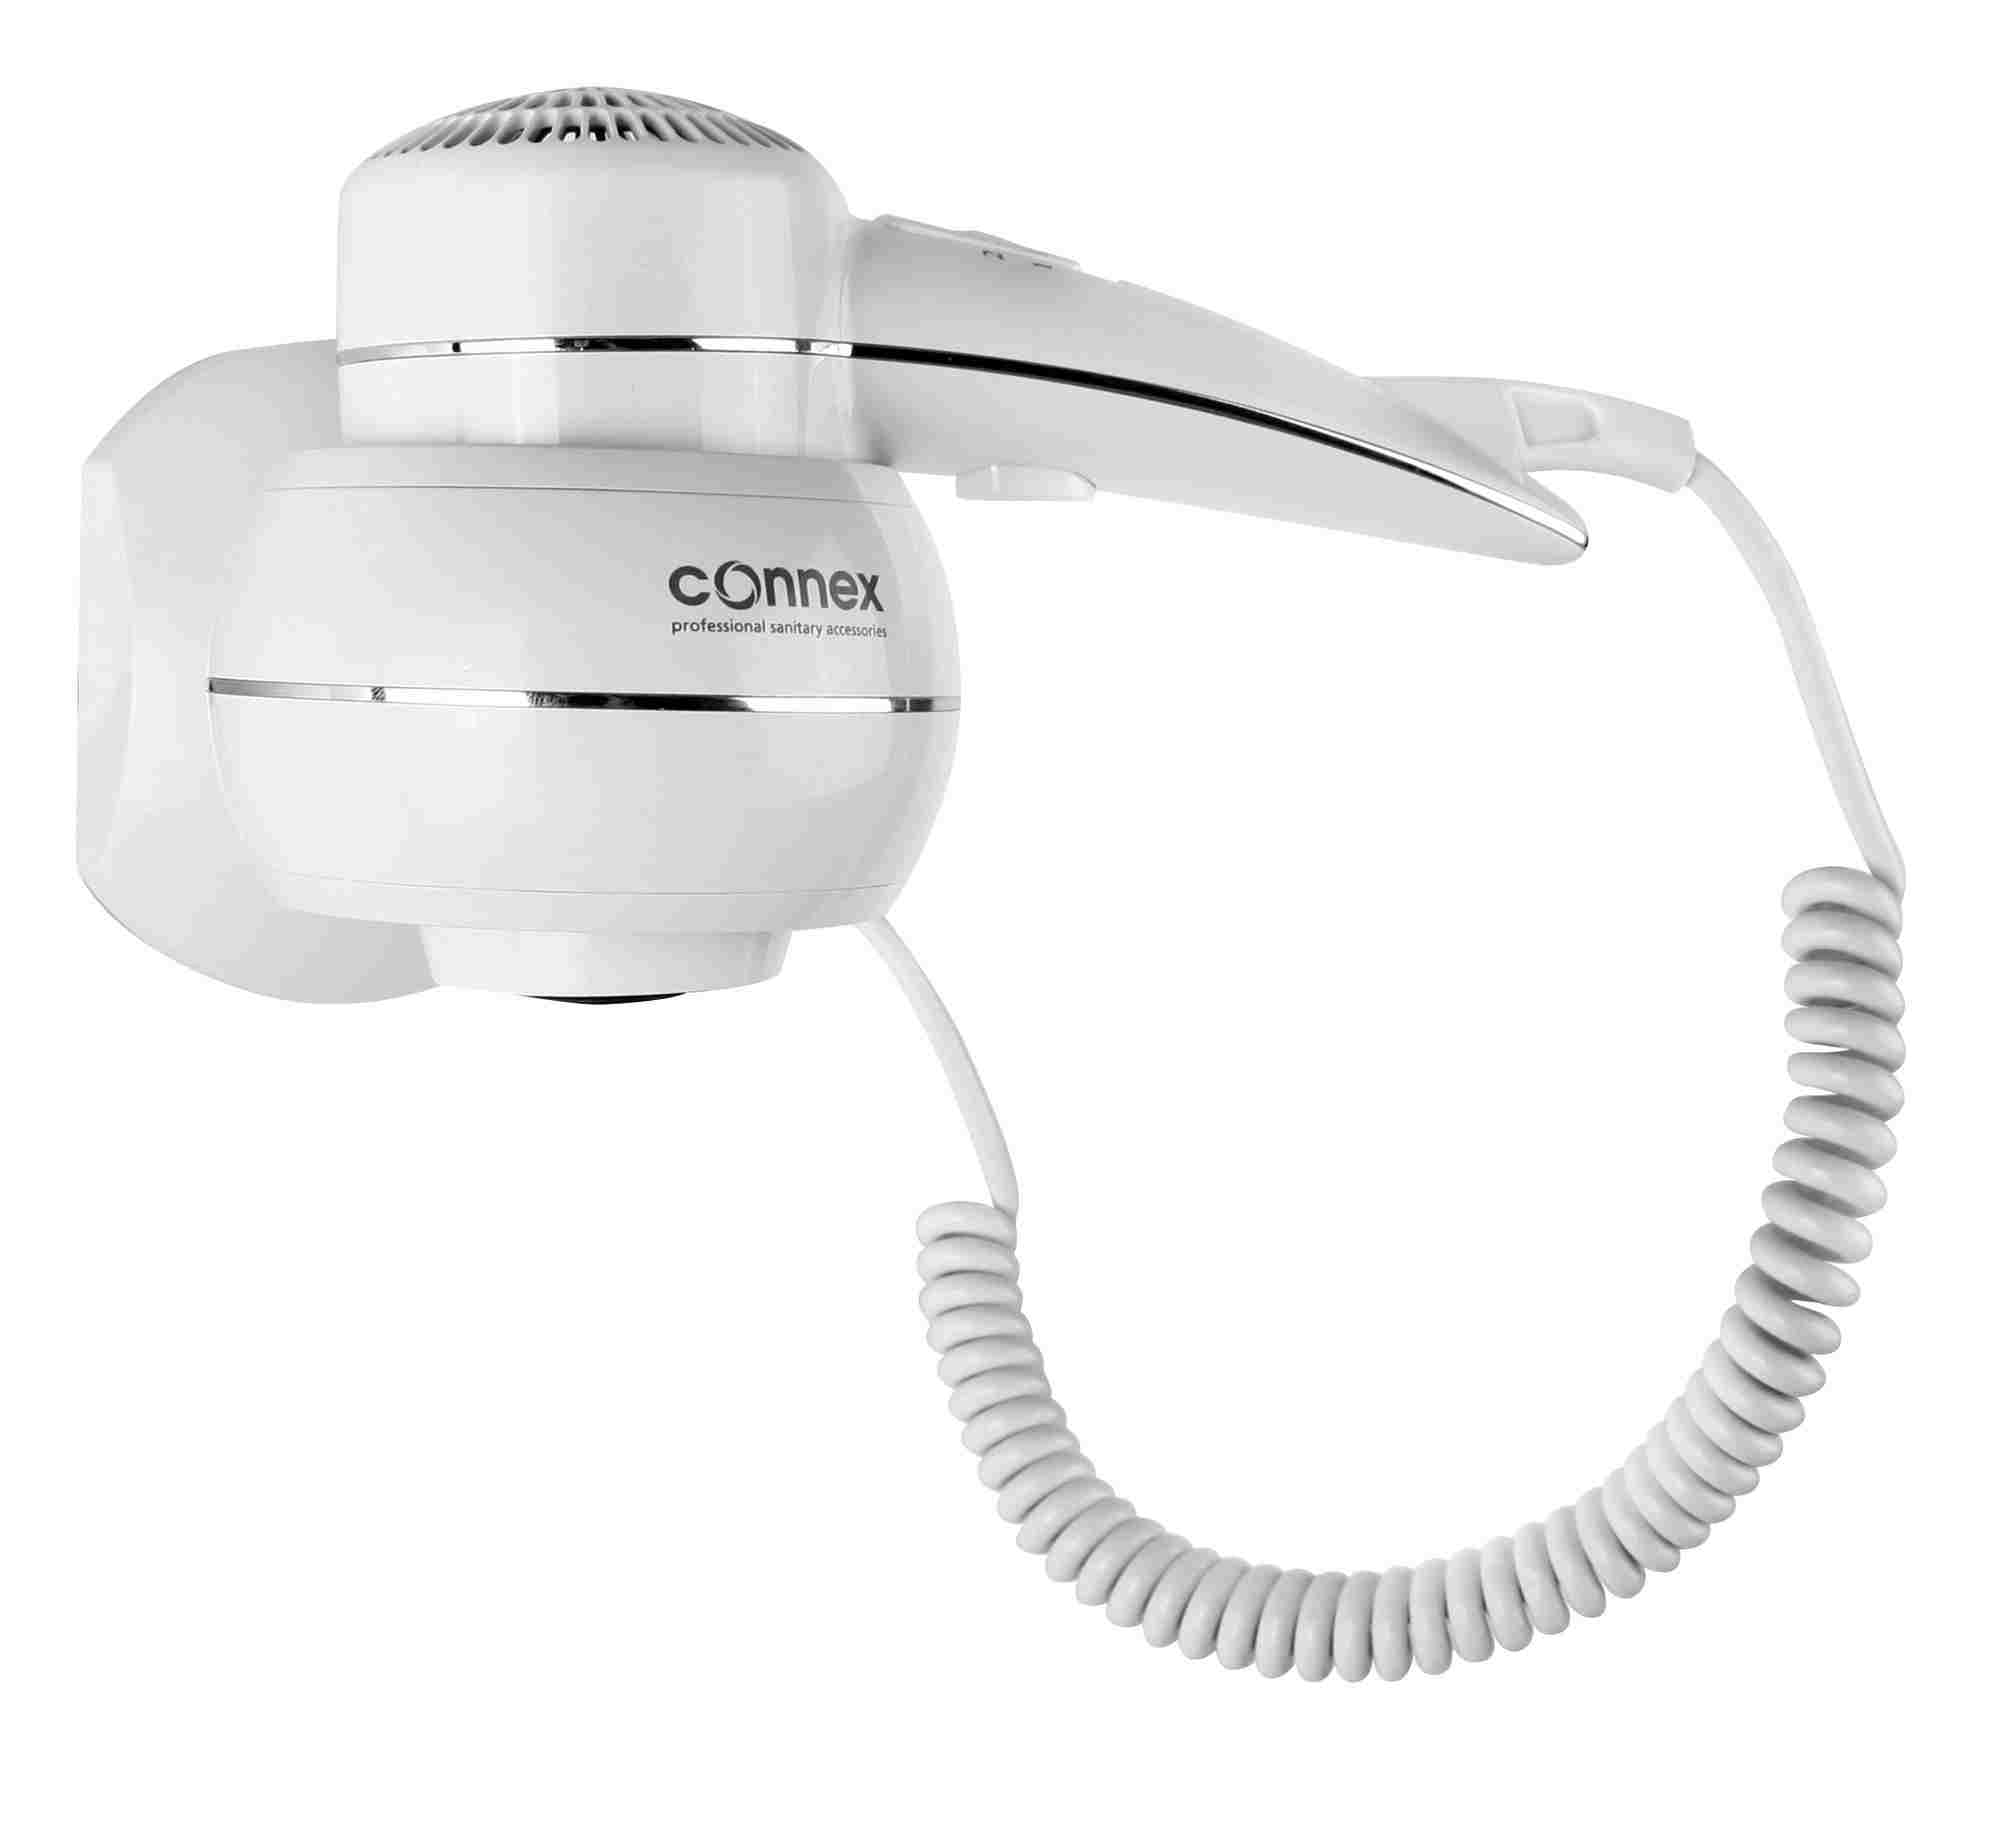   CONNEX WT-1500W1 CHROME LINE ()  1.5  